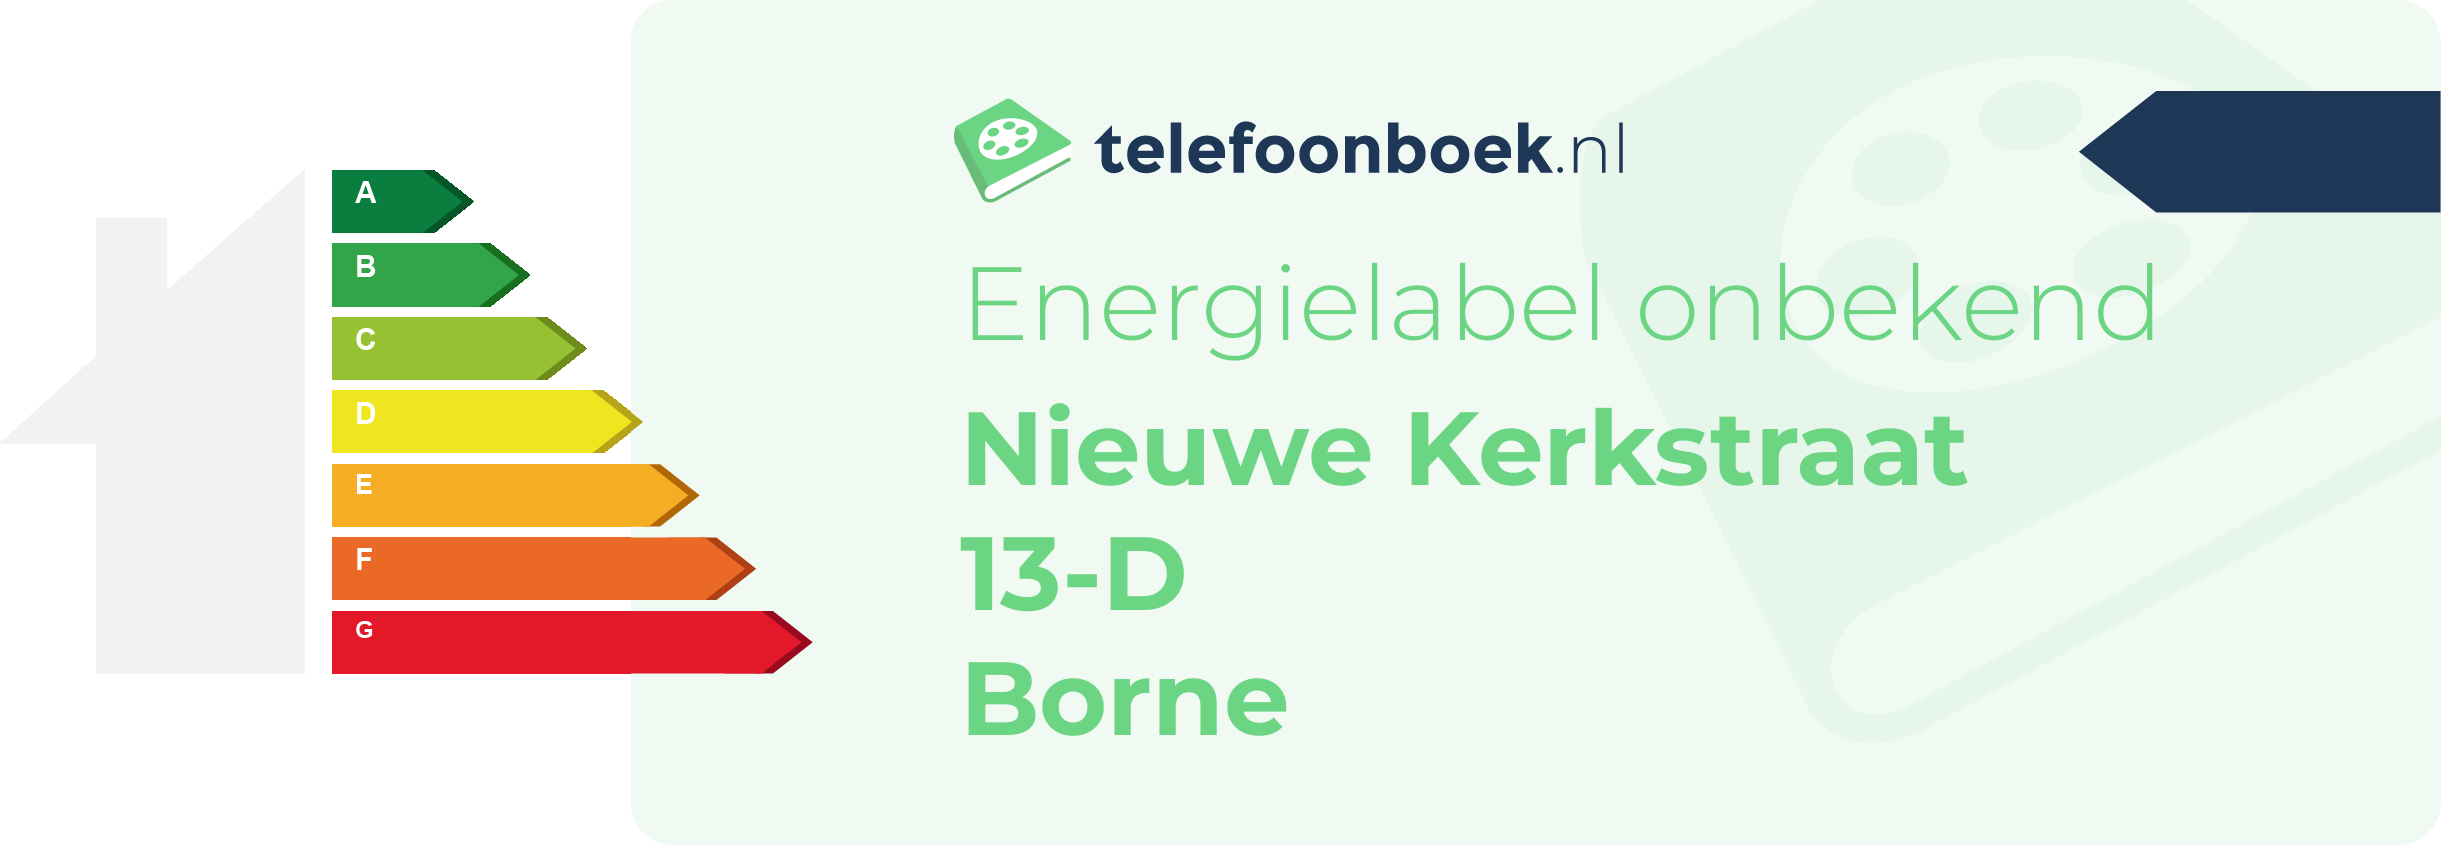 Energielabel Nieuwe Kerkstraat 13-D Borne